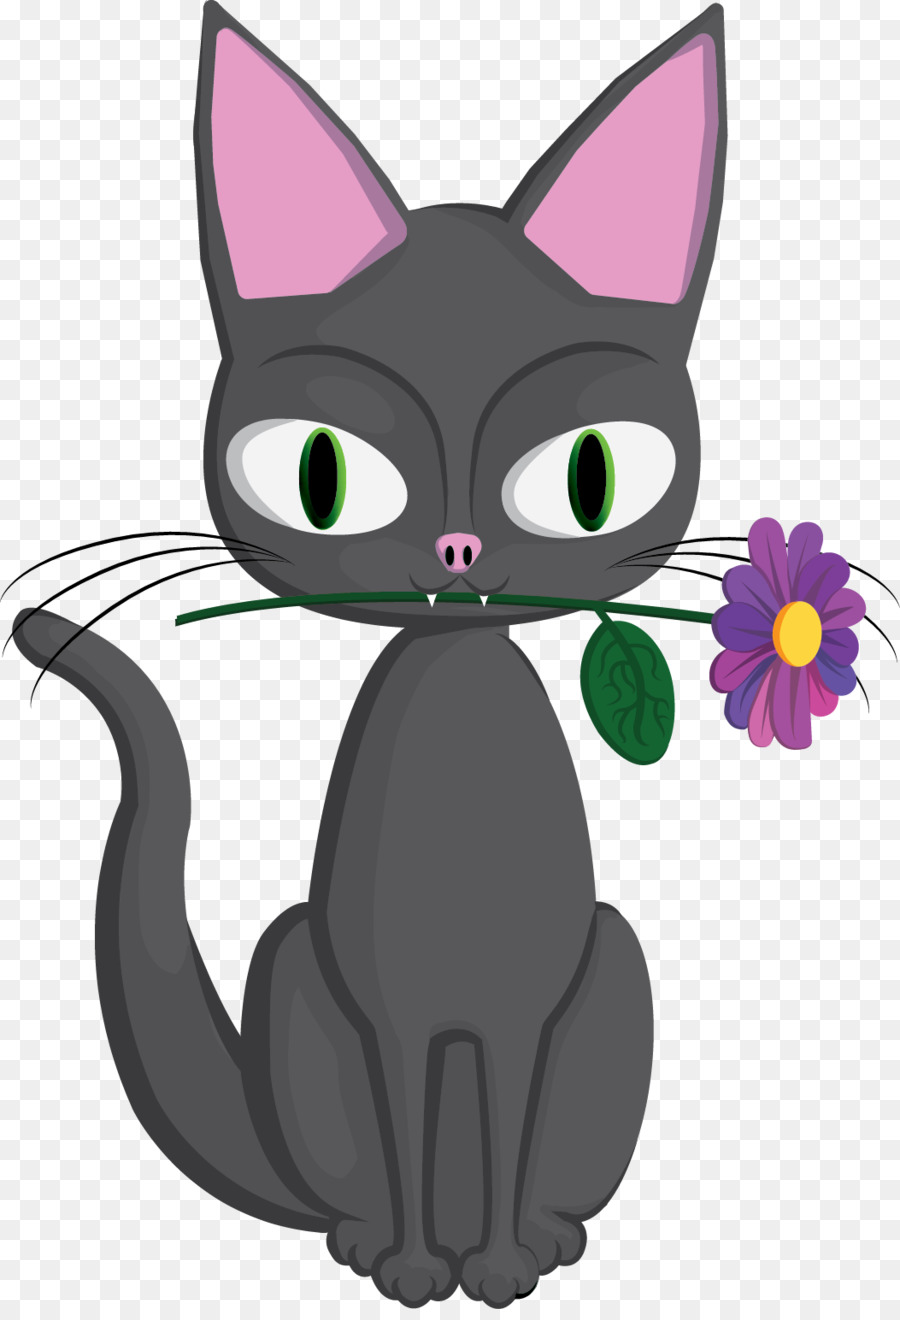 Korat Schnurrhaare von Kätzchen, Tabby cat Inländischen Kurzhaar-Katze - creative cat logo